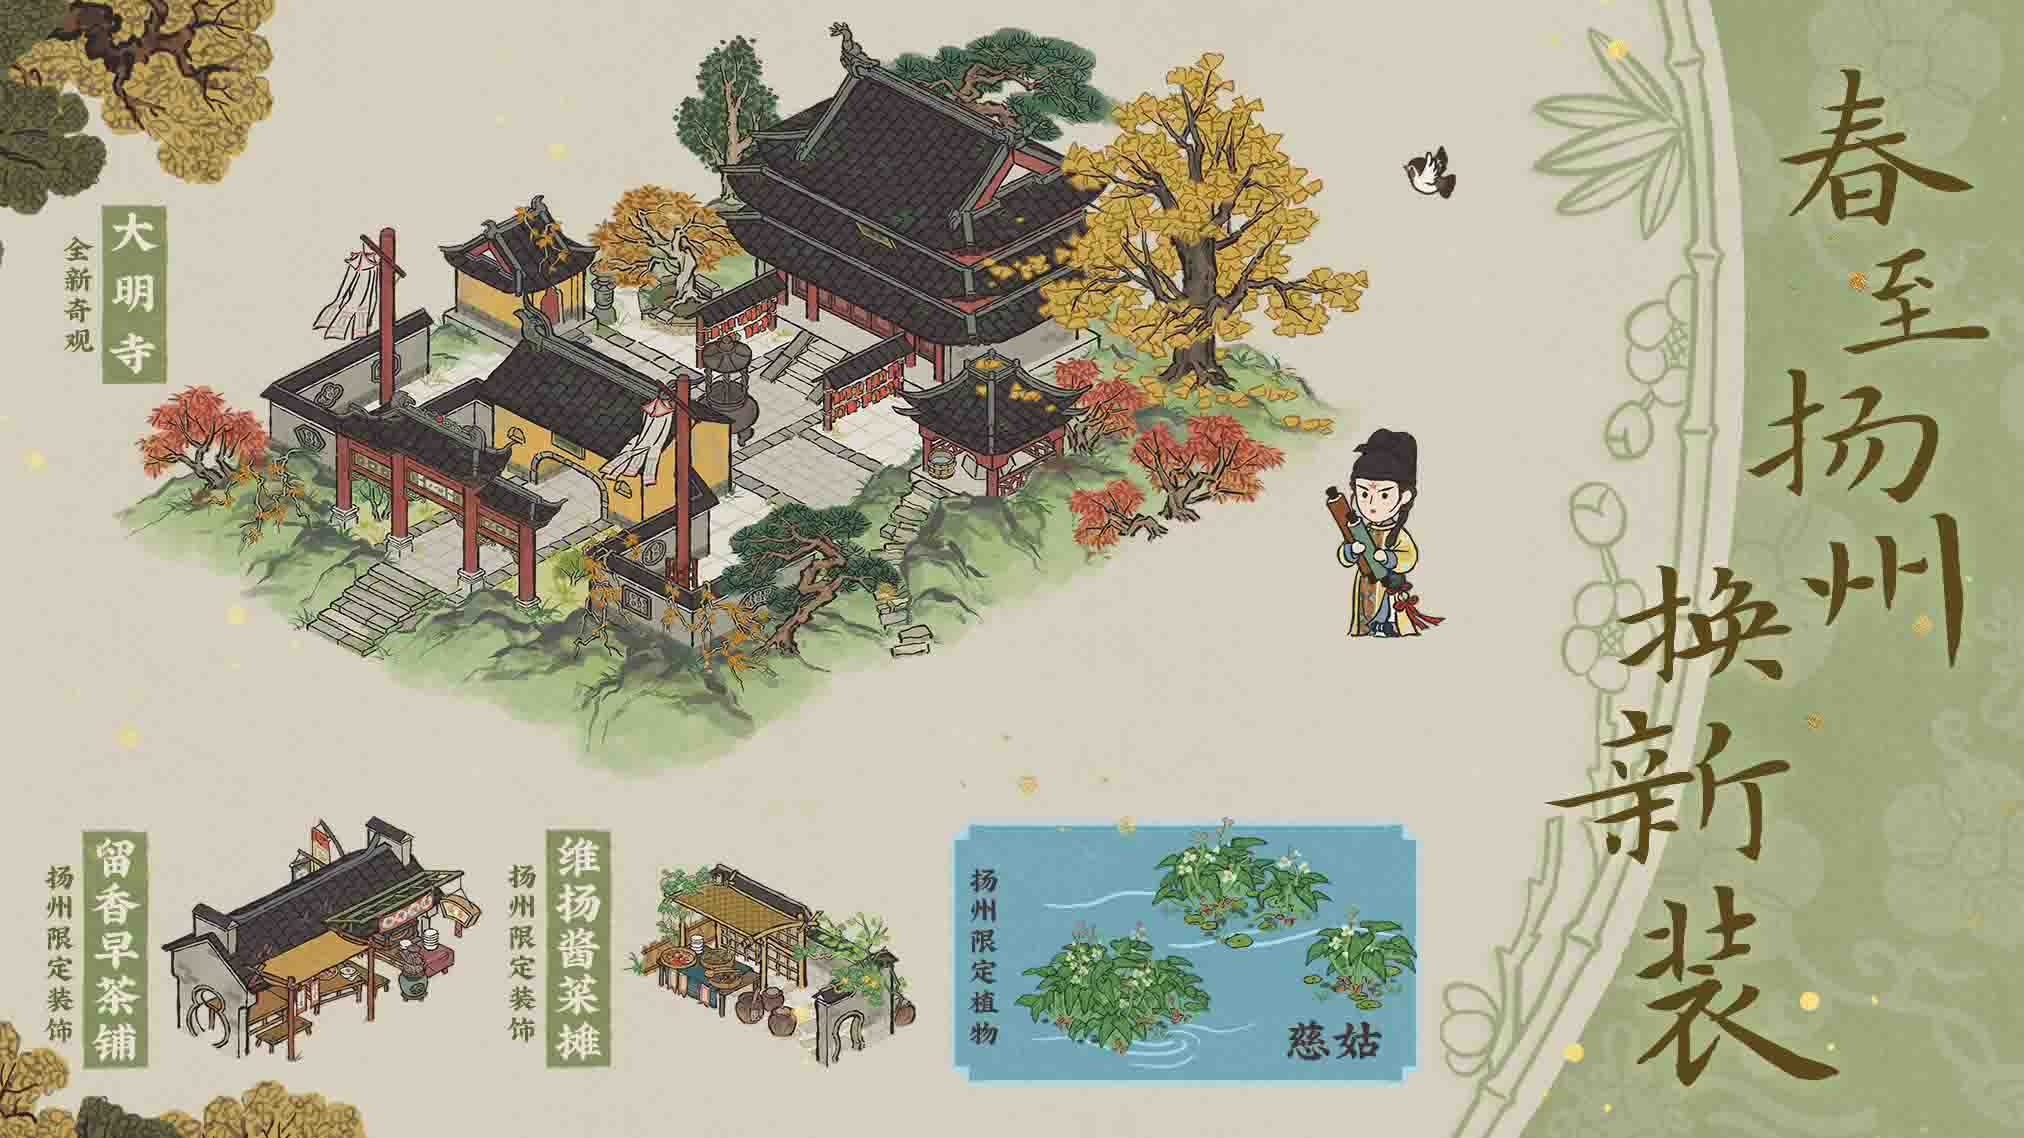 复向扬州踏花游——江南百景图3.3.0版本已正式上线啦！